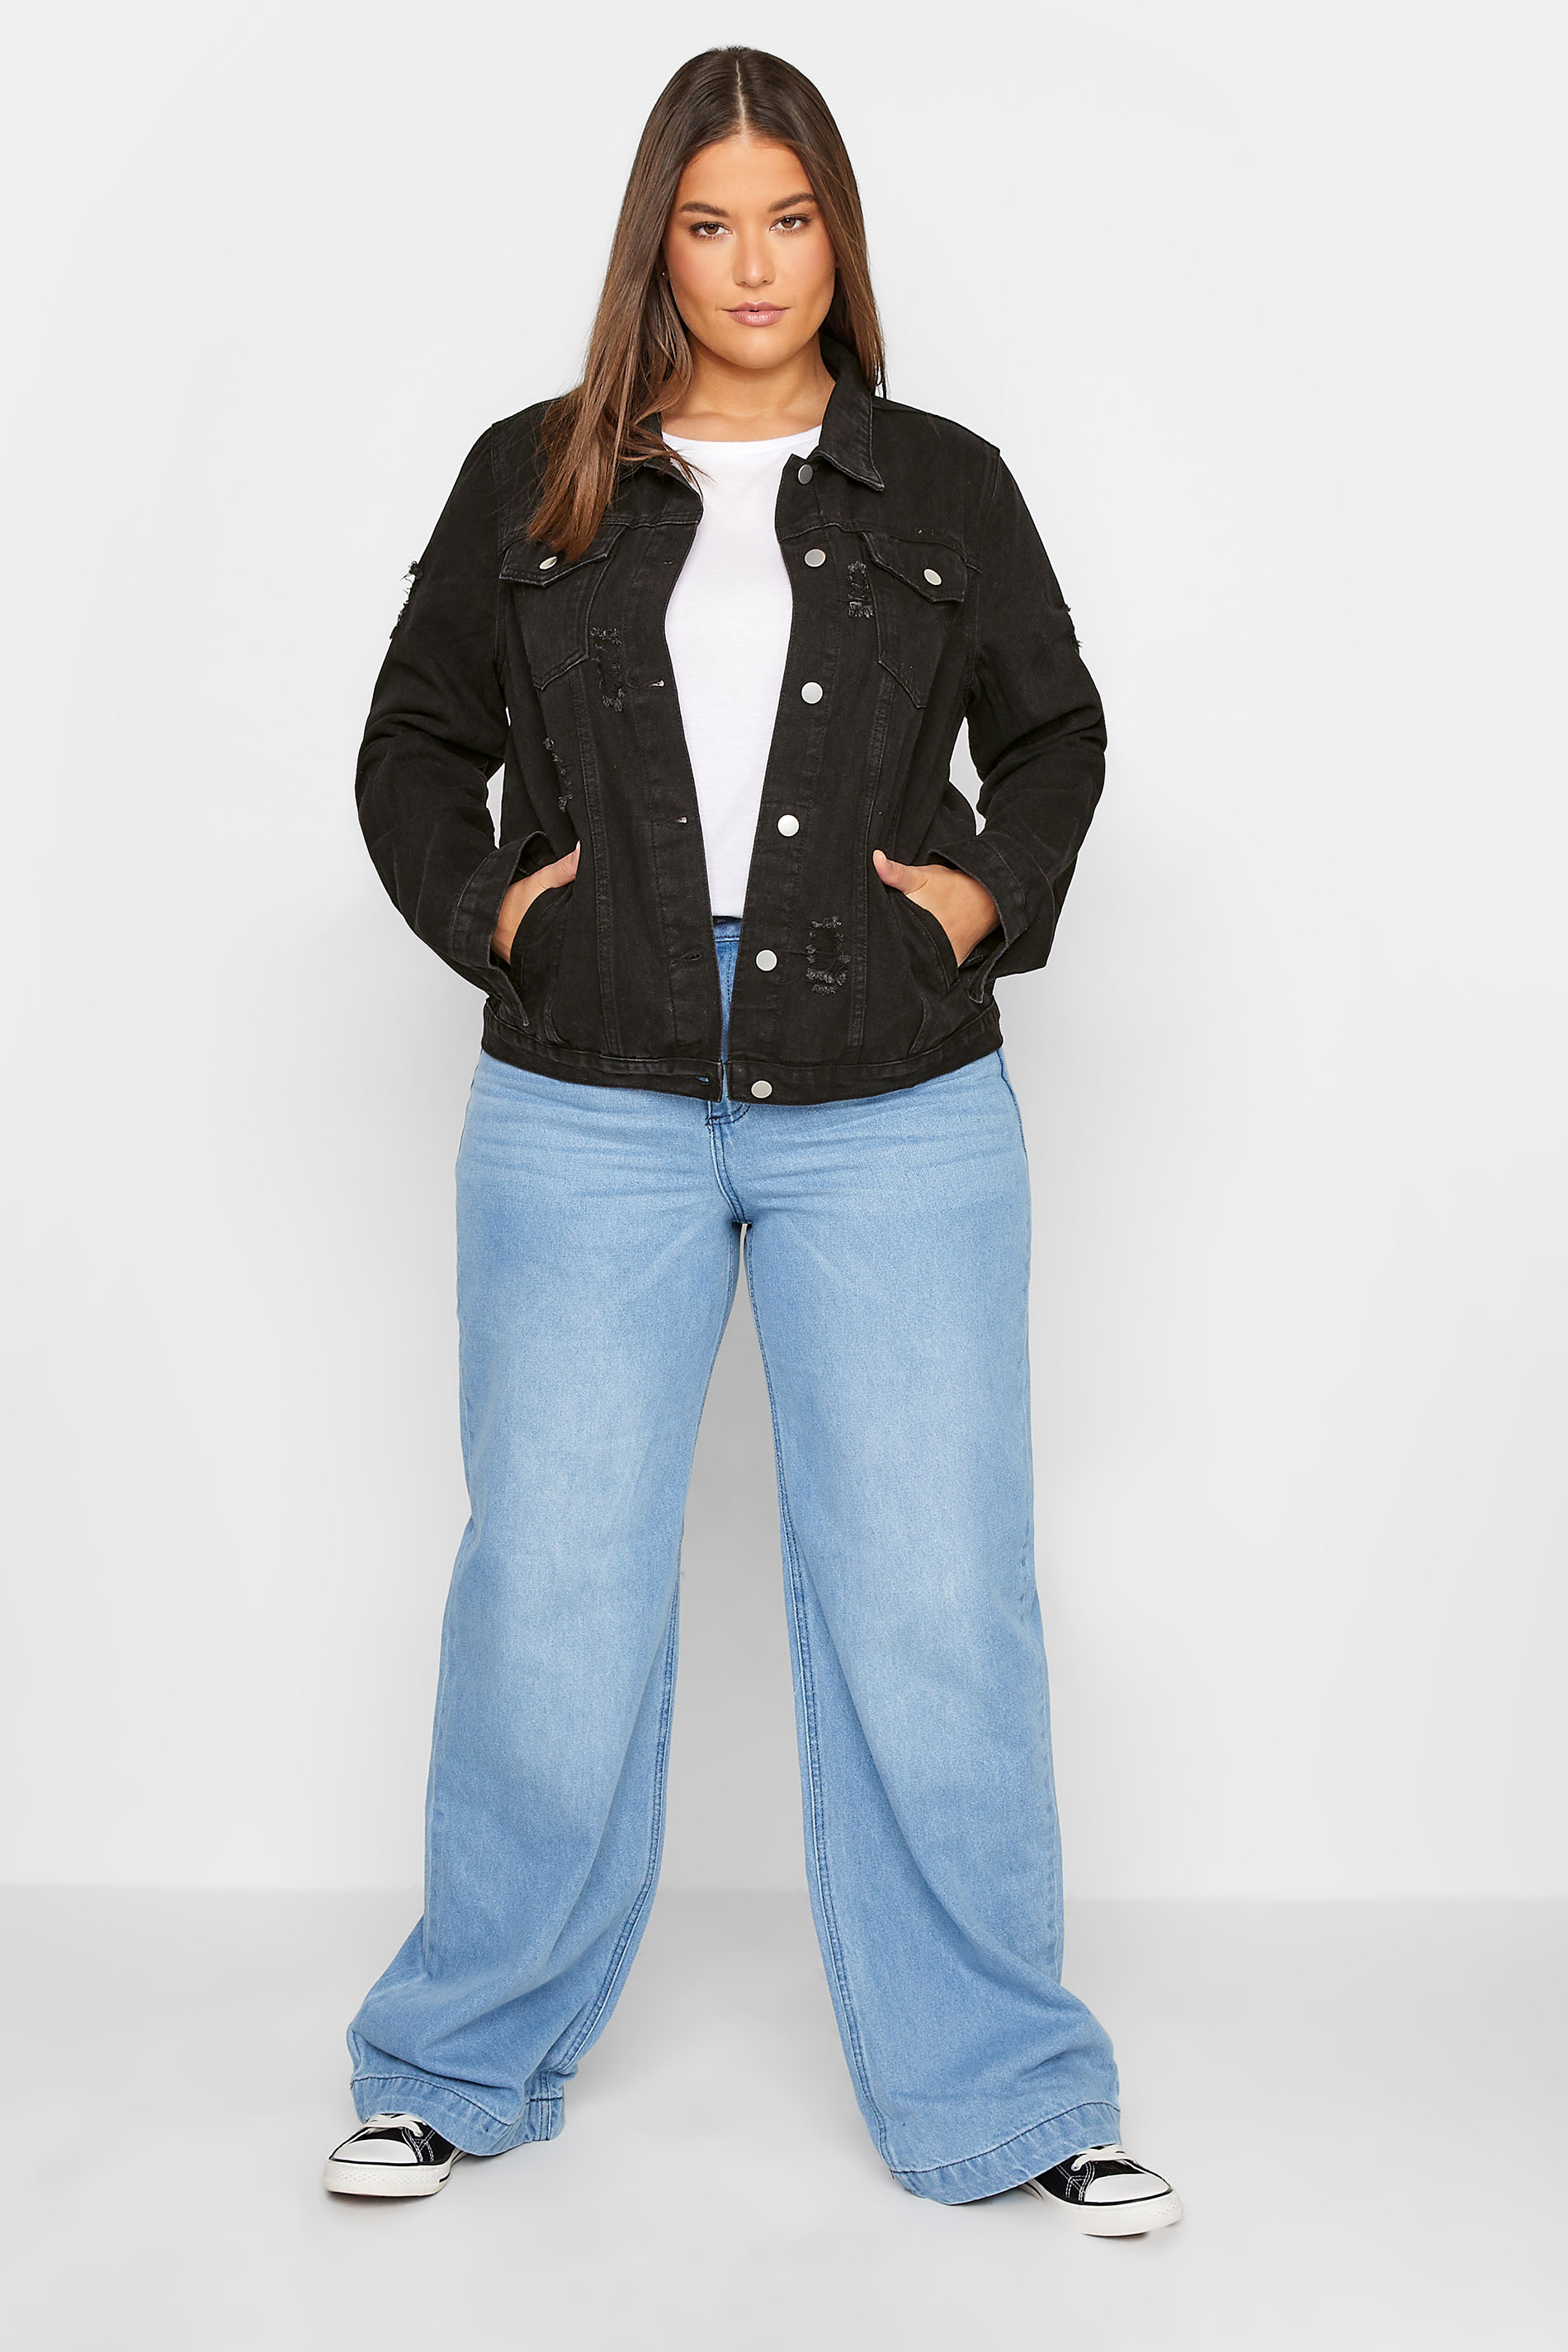 Tall Women's LTS Black Distressed Denim Jacket | Long Tall Sally 2